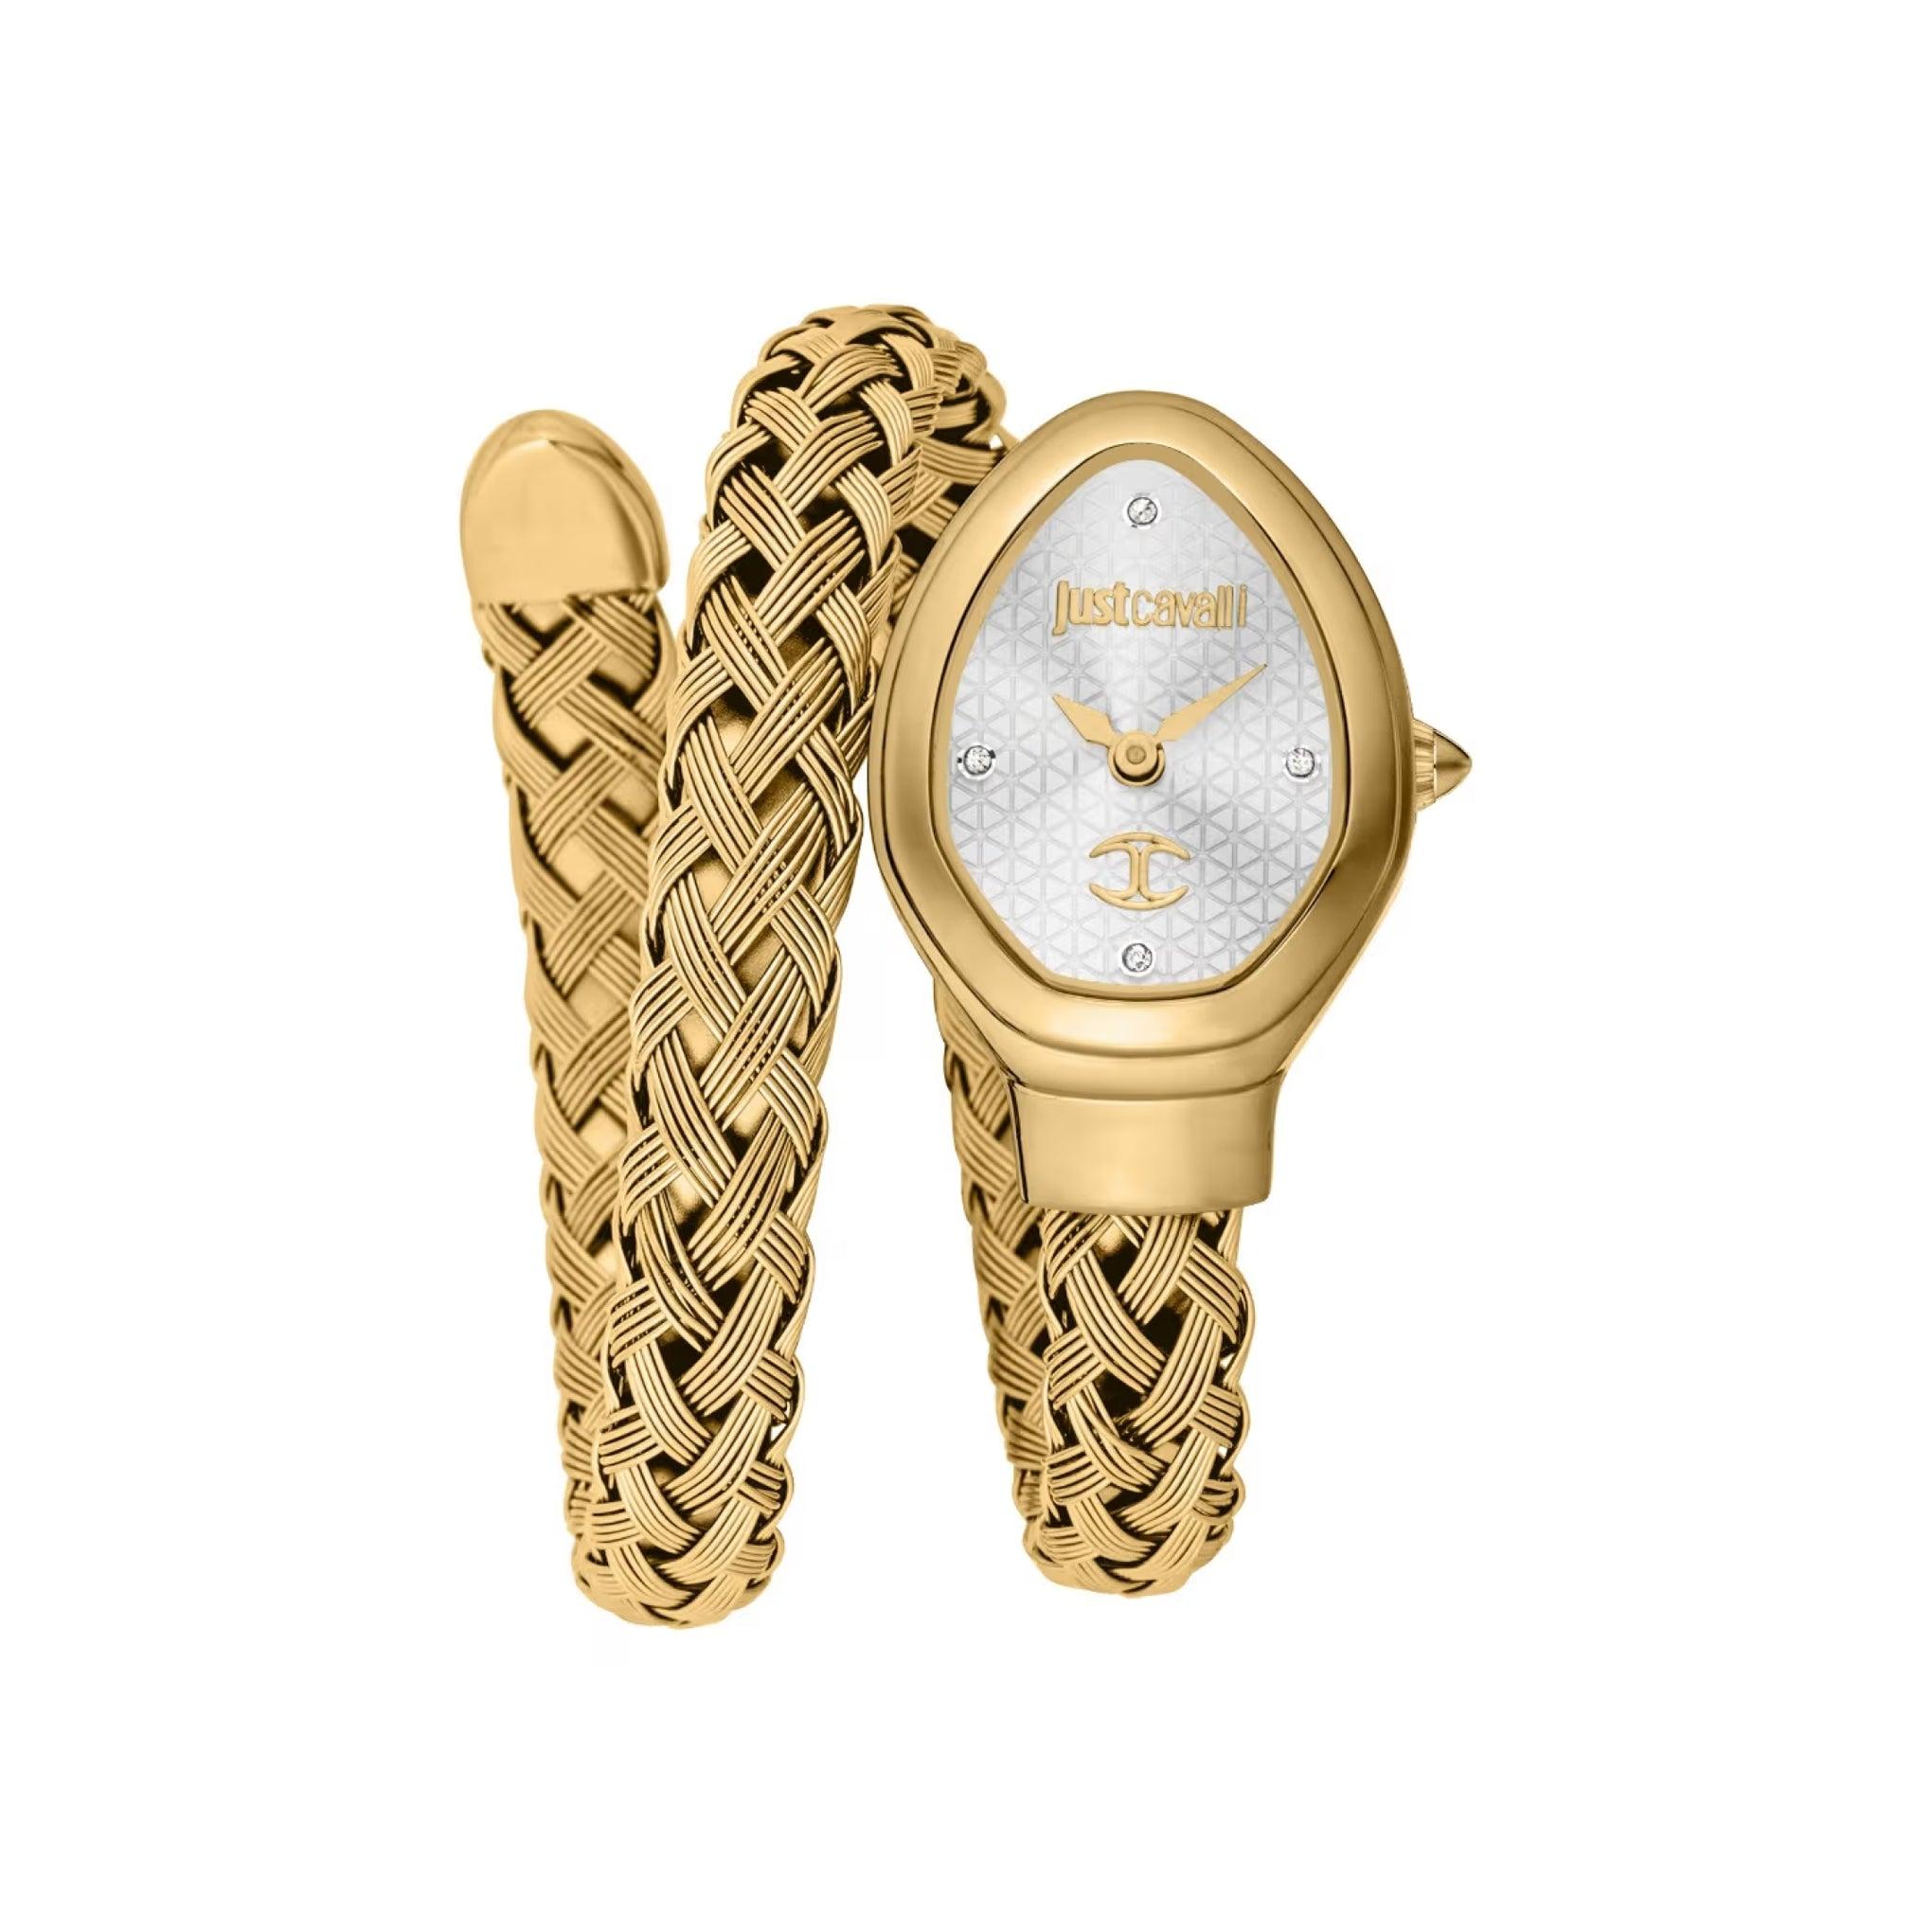 ساعة يد نسائية بشكل ثعبان - ذهبي - بحزام معدني مقاوم للصدأ جست كافالي Just Cavalli Women's Oval Shape Stainless Steel Wrist Watch